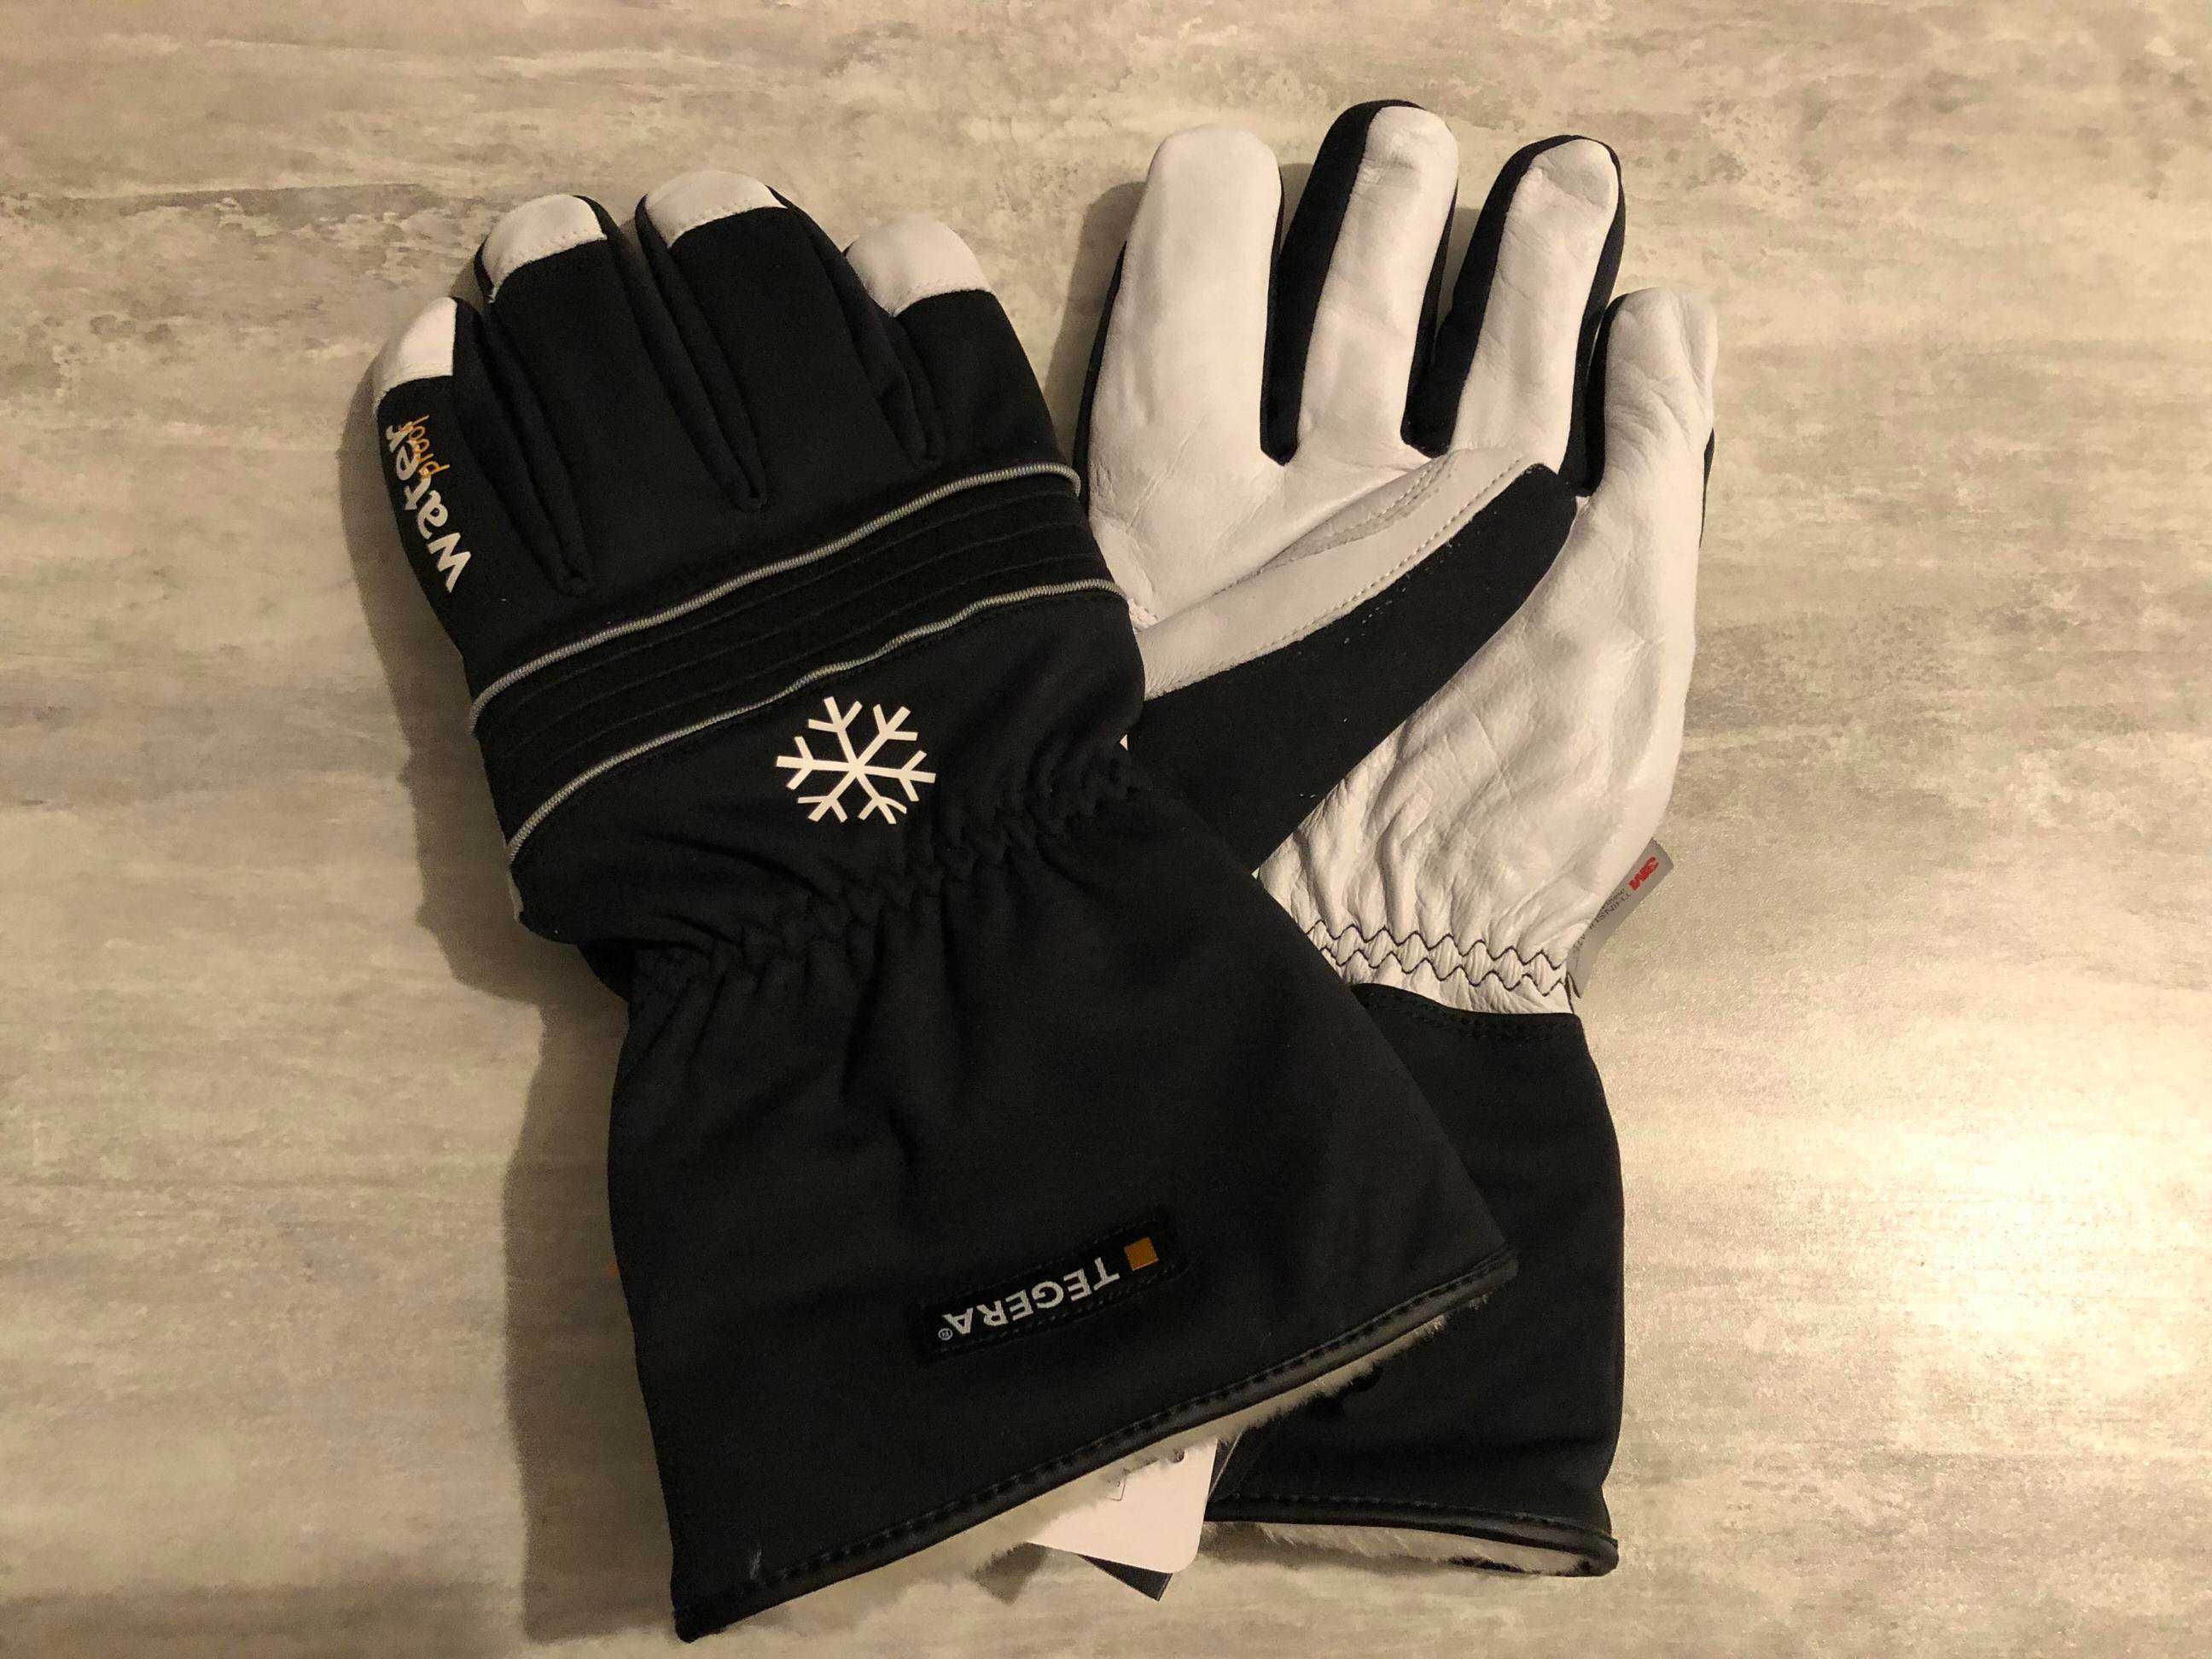 Зимние перчатки 3M Tegera 296, размер 11. (Работа, улица, лыжи)